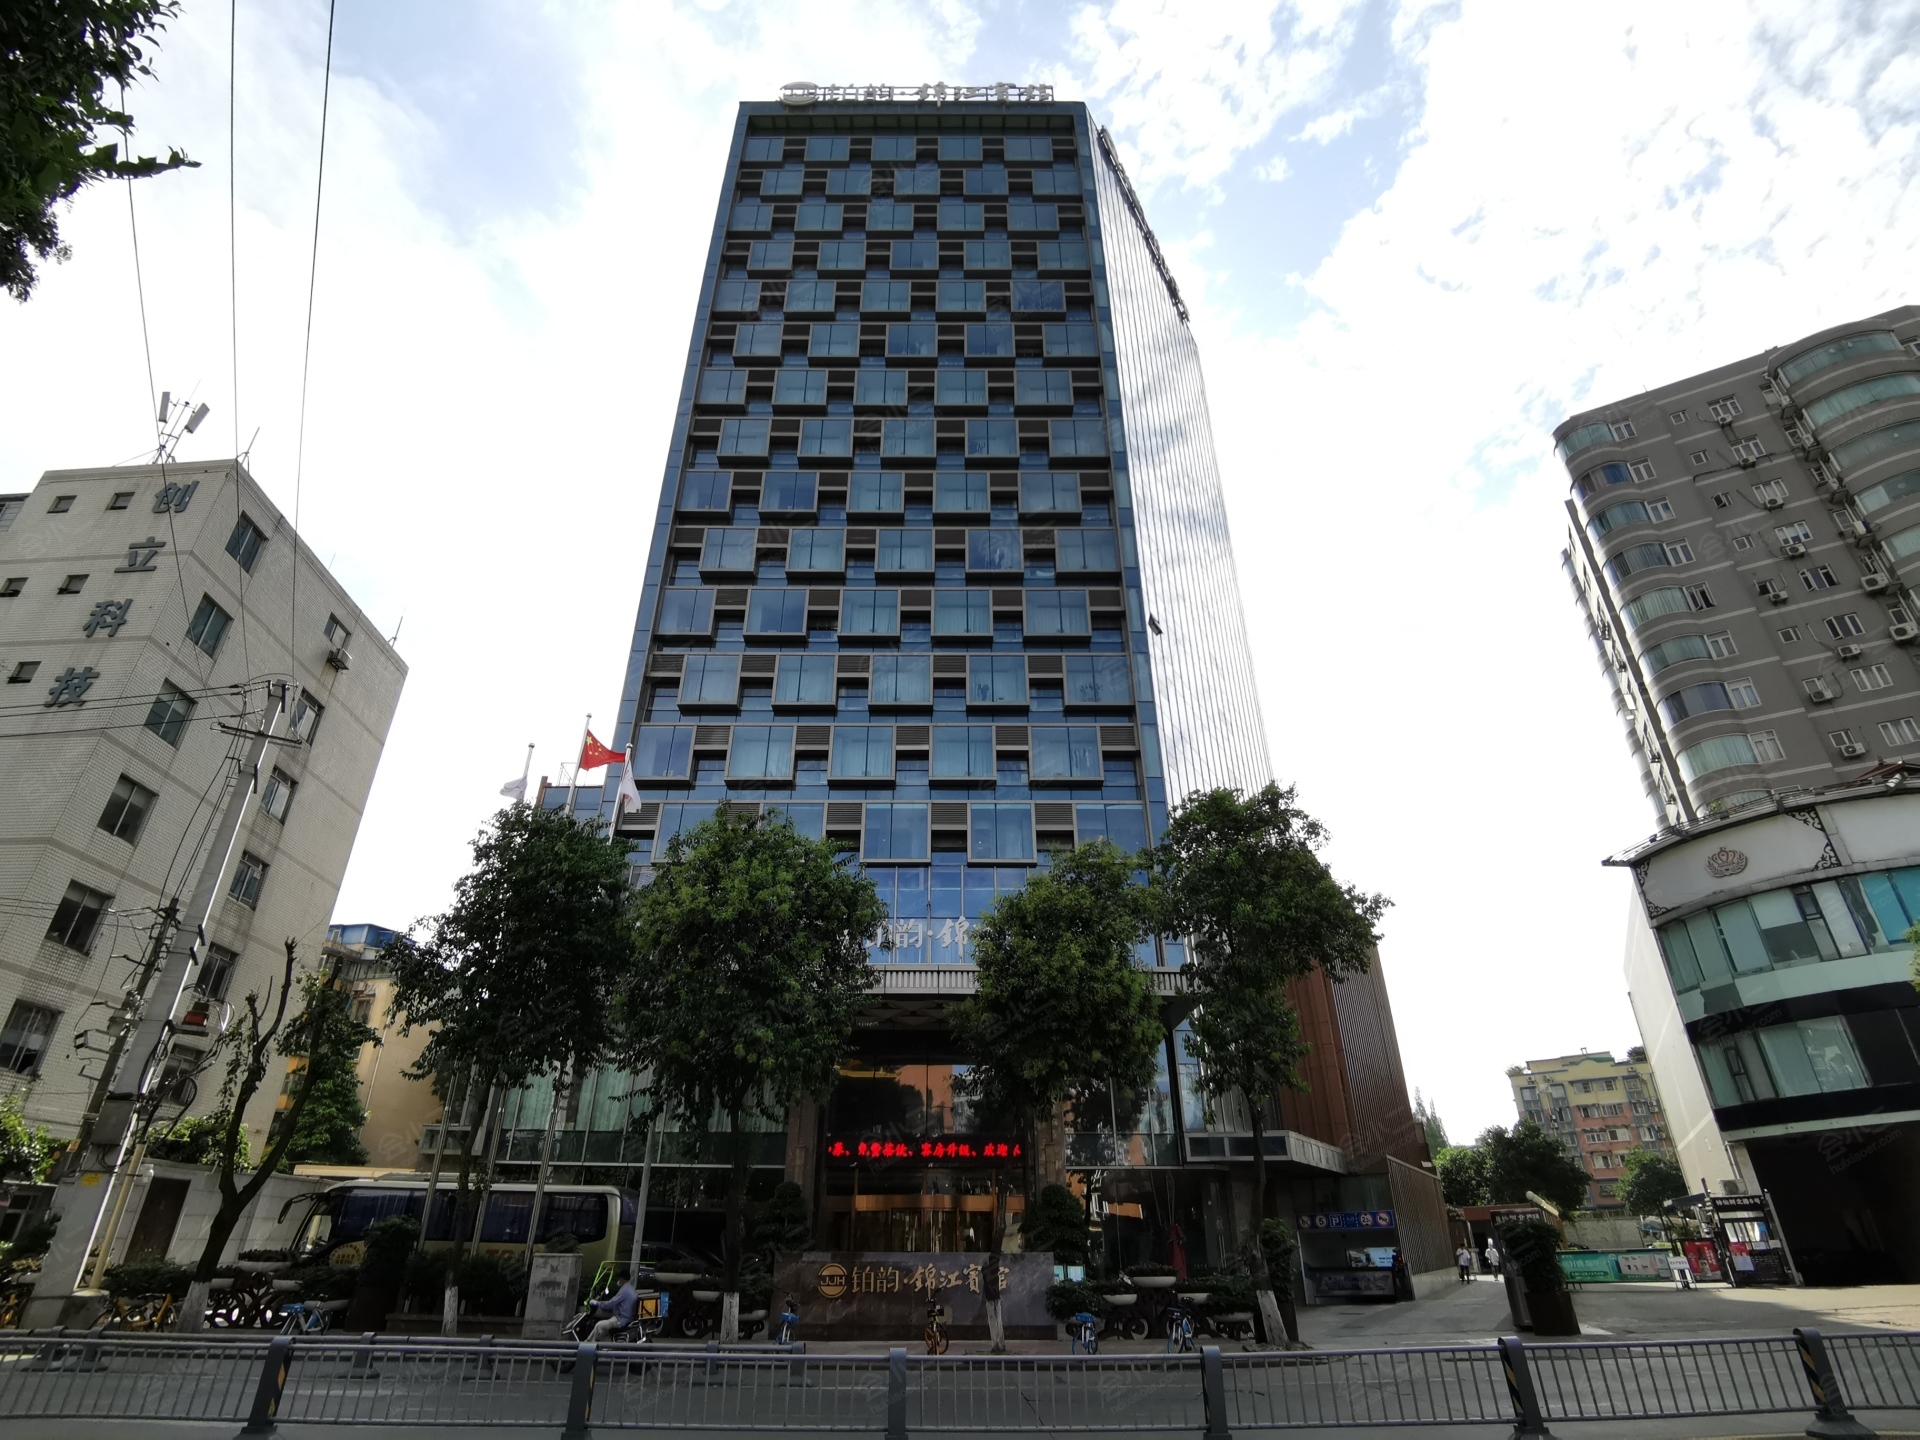 锦江宾馆 (成都) - JinJiang Hotel - 酒店预订 /预定 - 4358条旅客点评与比价 - Tripadvisor猫途鹰